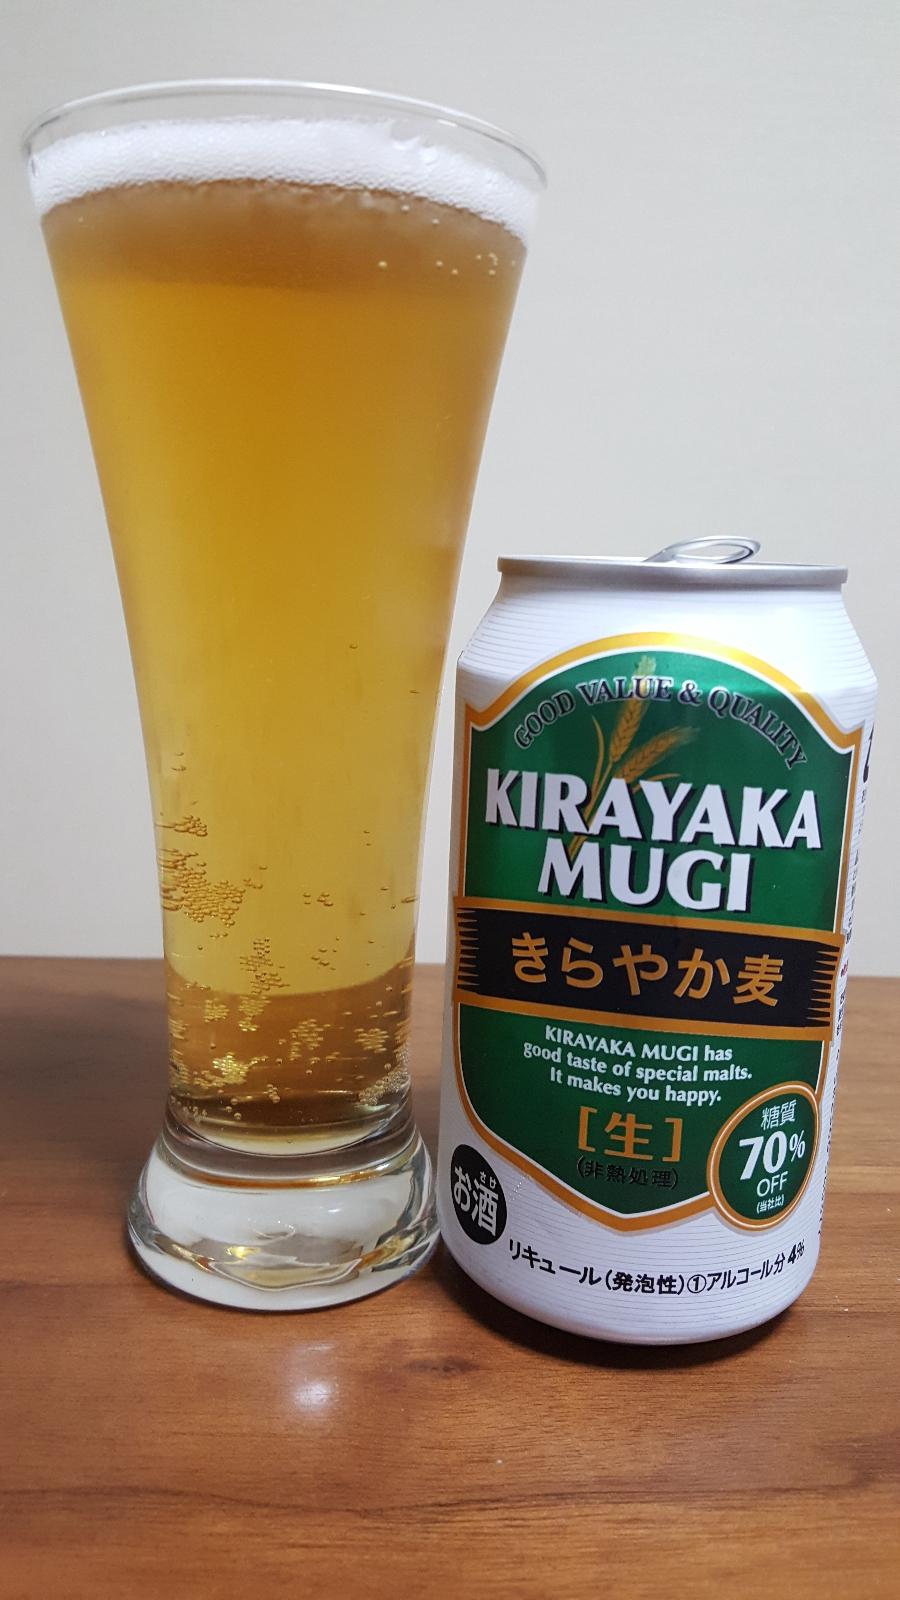 Kirayaka Mugi Light